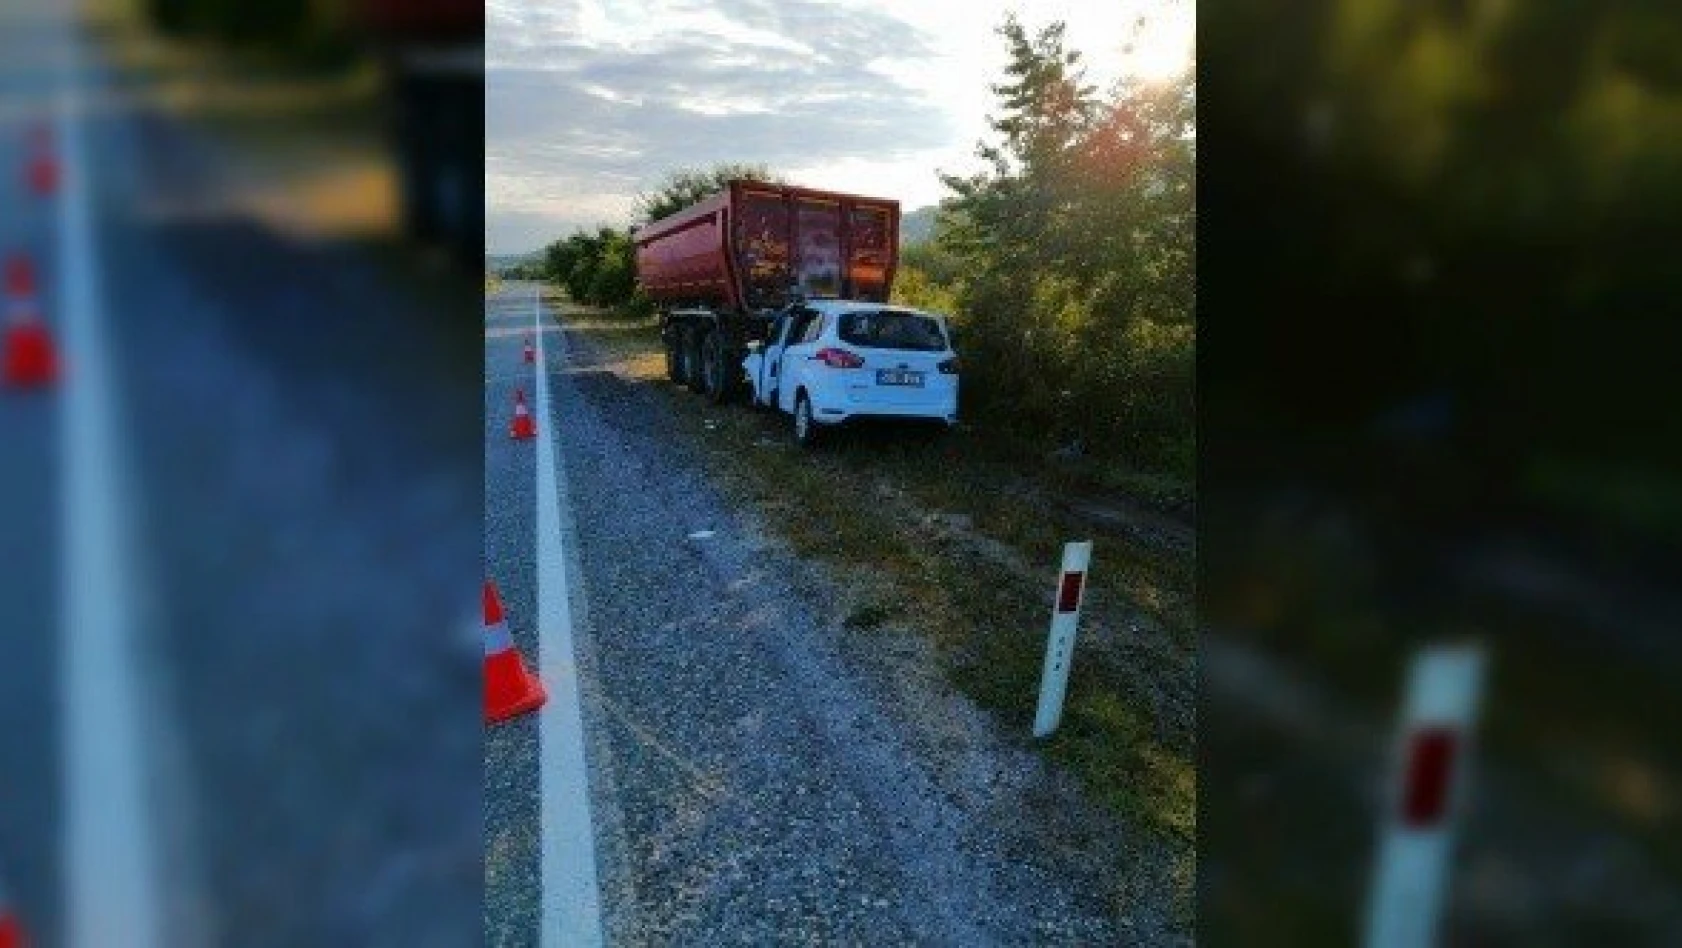 Kastamonu'da otomobil tırın dorsesine çarptı: 1 ölü, 2 yaralı